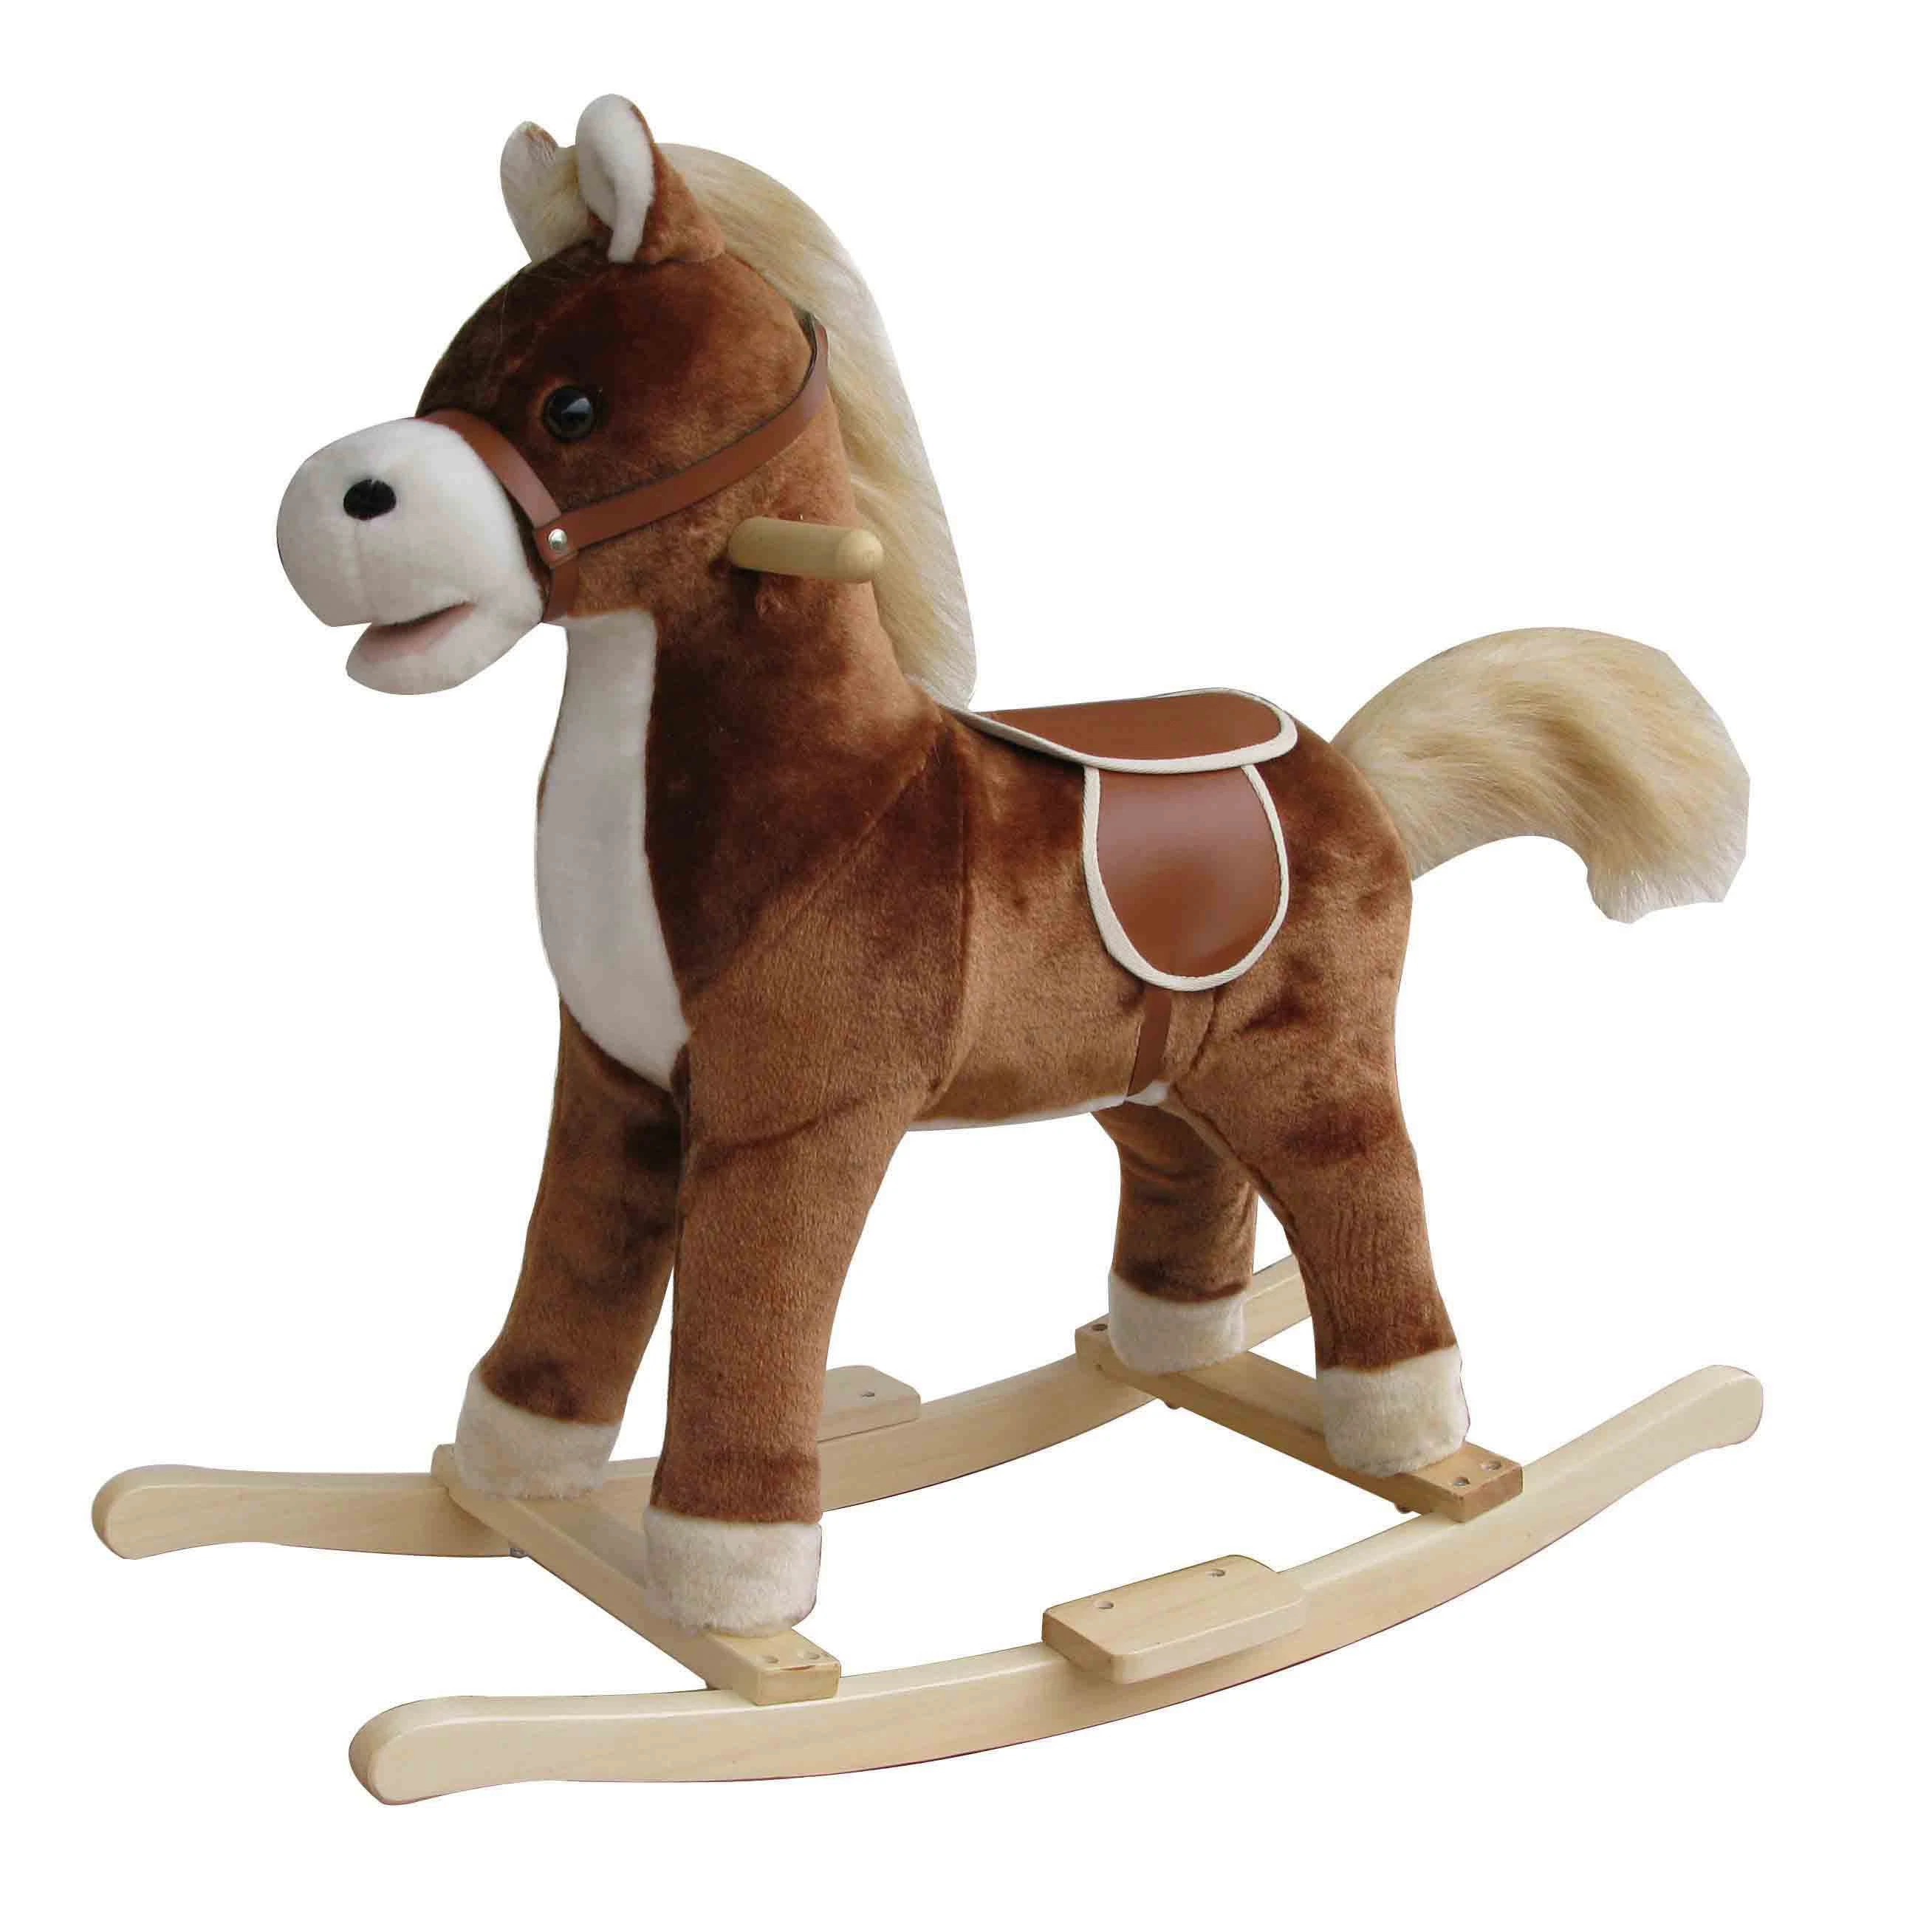 Custom Kids Ride em cavalo de balanço de madeira macio Trojan Electric Fabricante do brinquedo